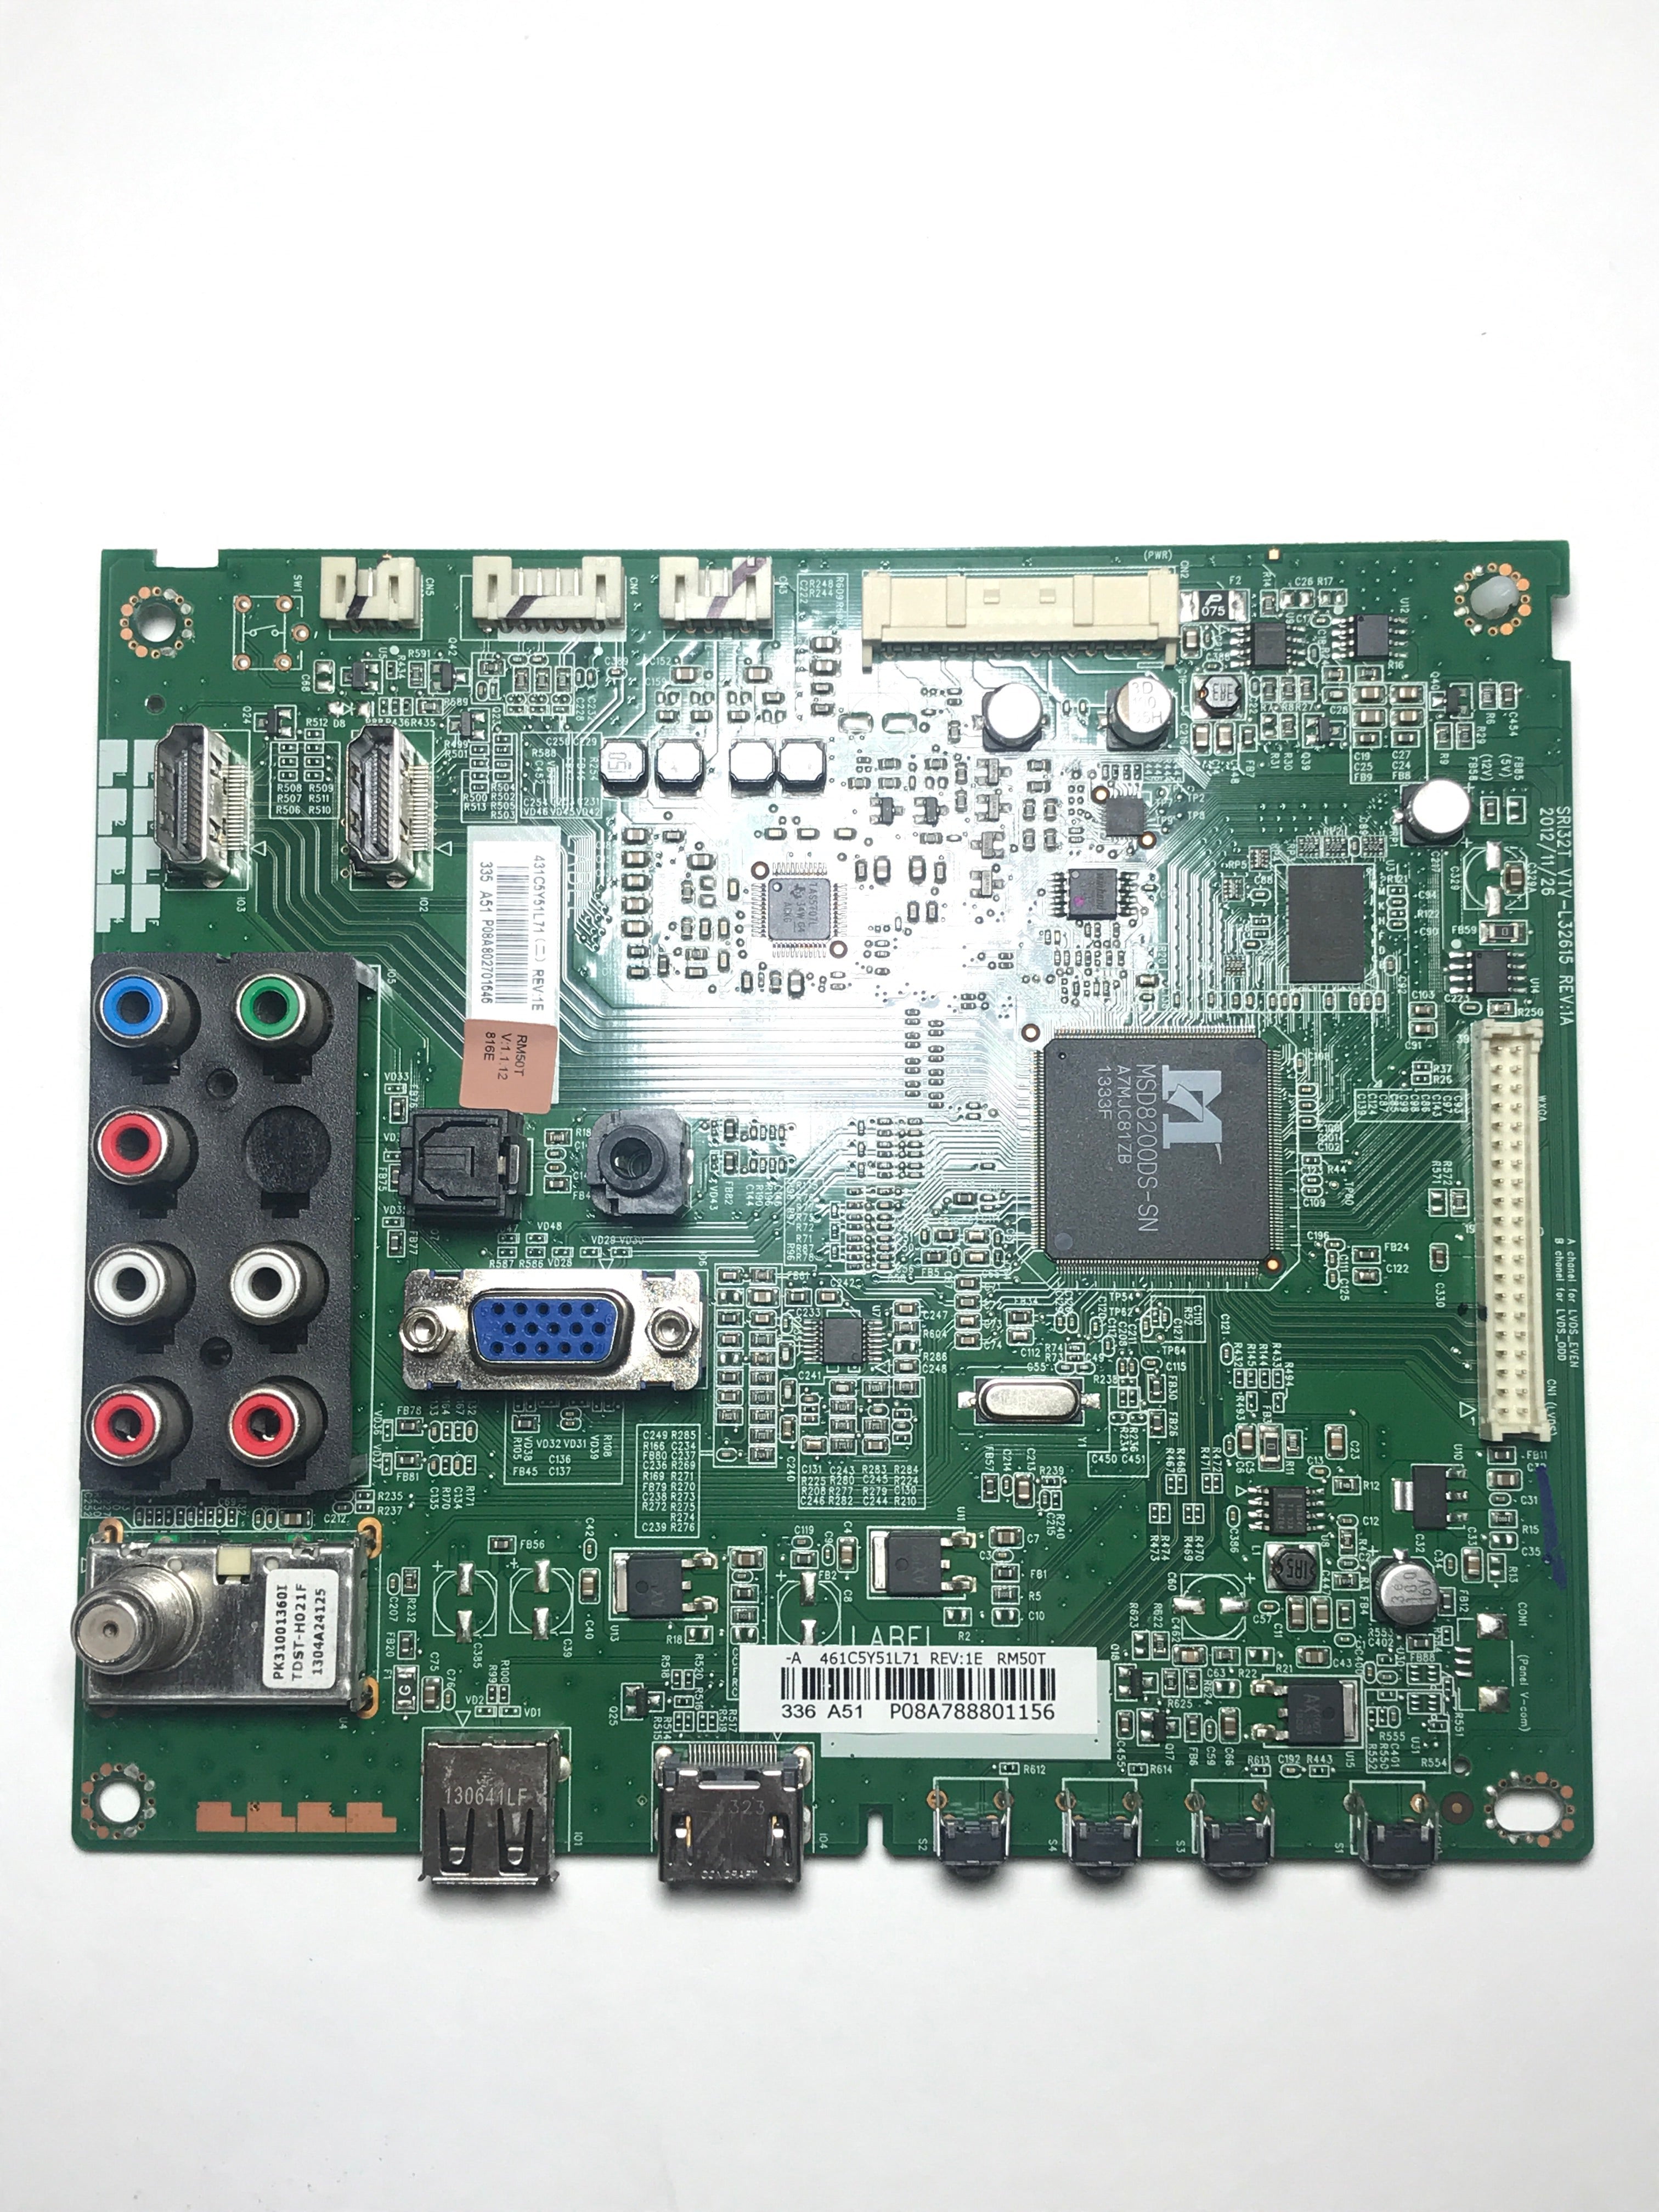 Toshiba 75033152 461C5Y51L71 Main Board for 50L1350U